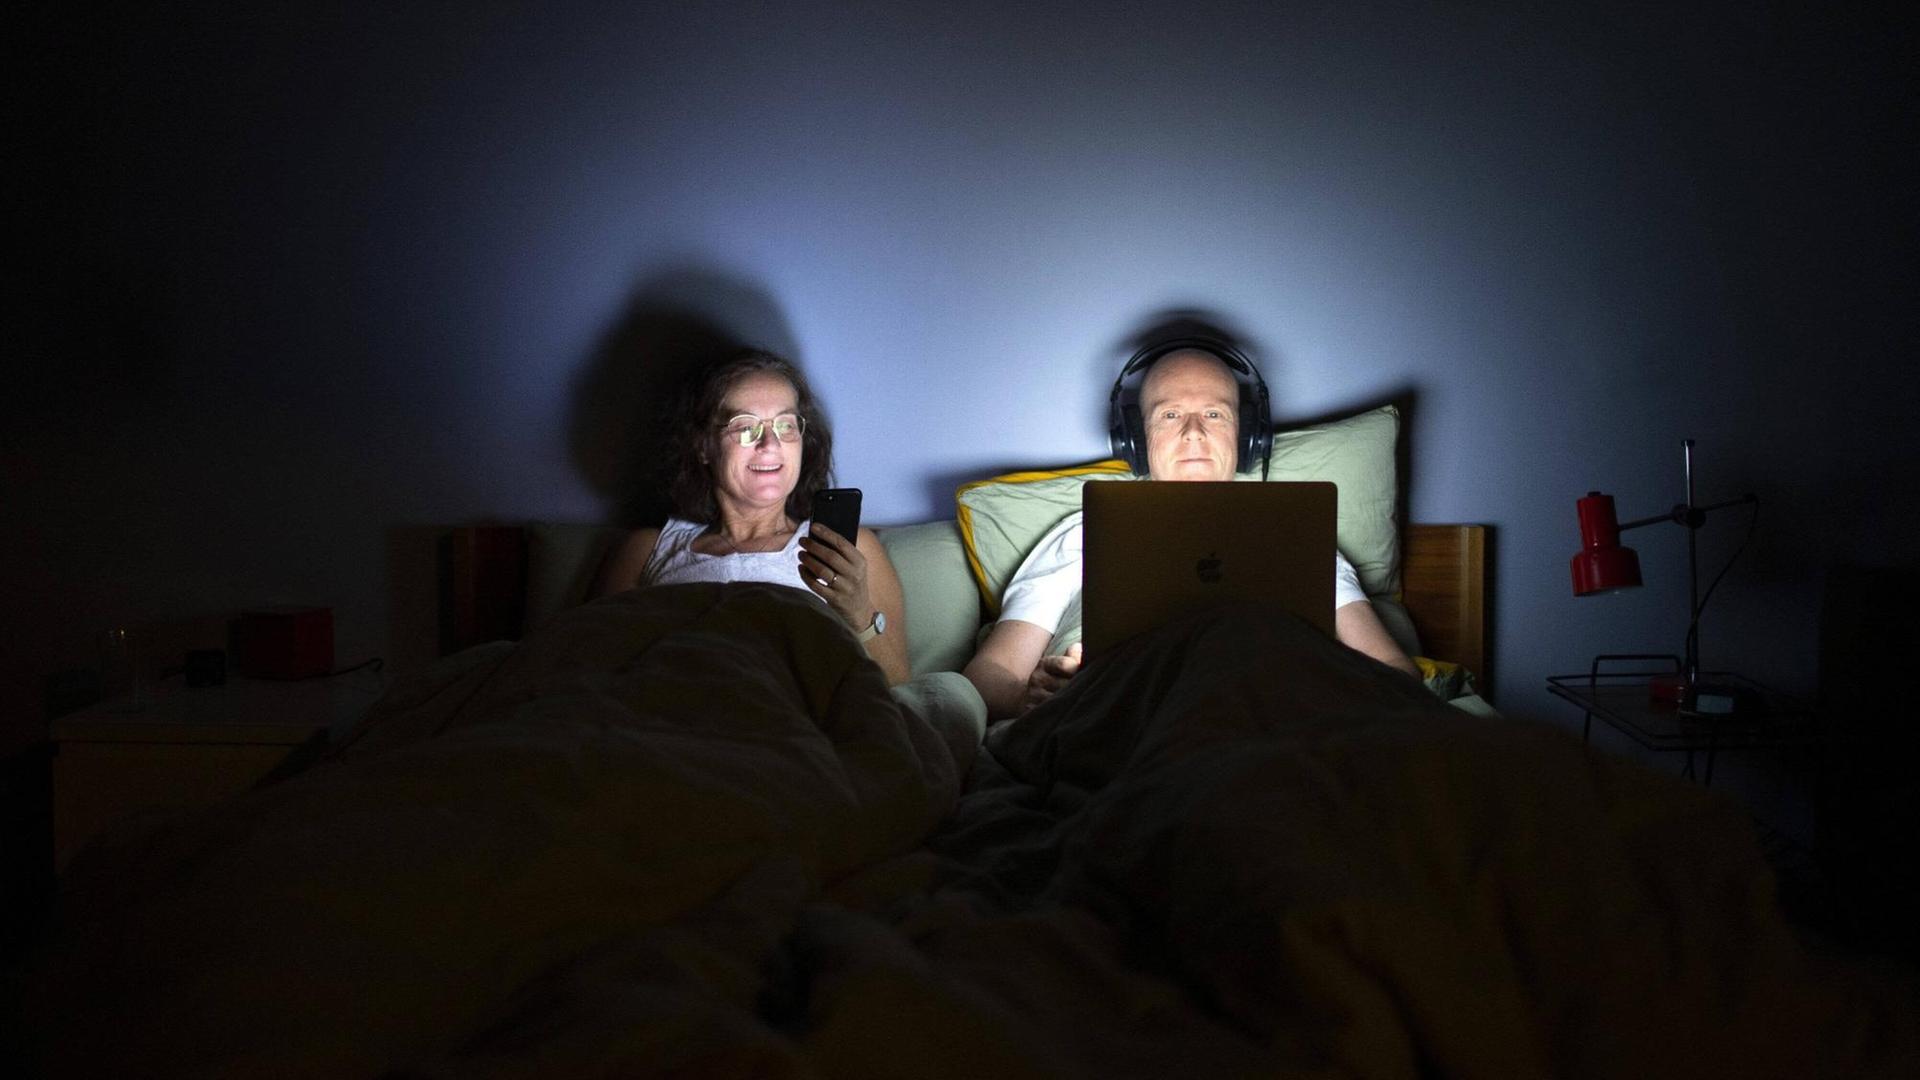 Paar liegt im Bett, die Frau schaut auf ihr Smartphone, während der Mann Kopfhörer aufhat und auf sein Laptop starrt.